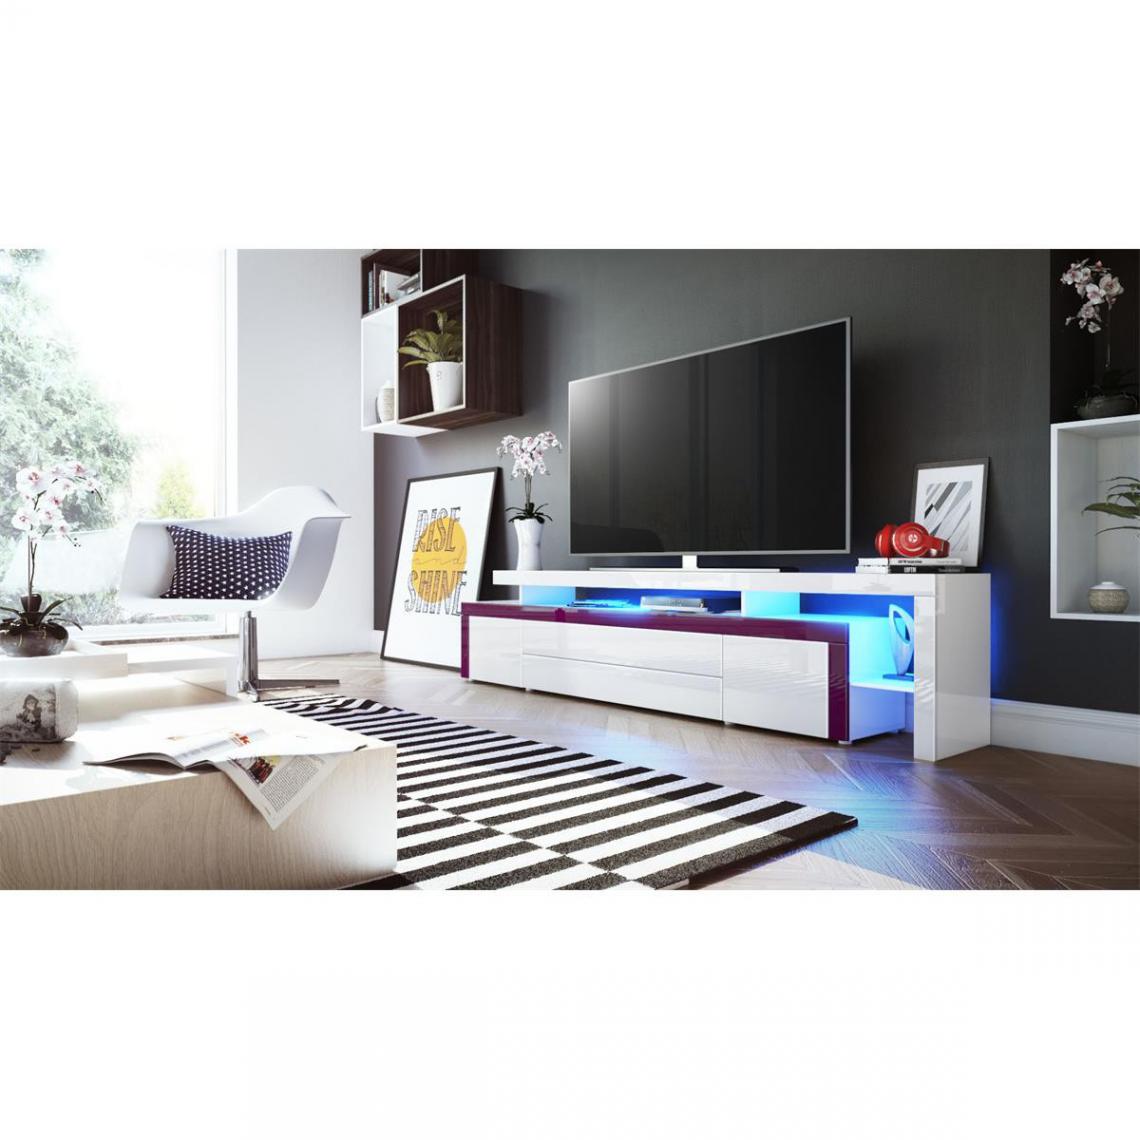 Mpc - Meuble tv blanc brillant et bordure mûre + led rgb (LxHxP): 227 x 52 x 35 cm - Meubles TV, Hi-Fi